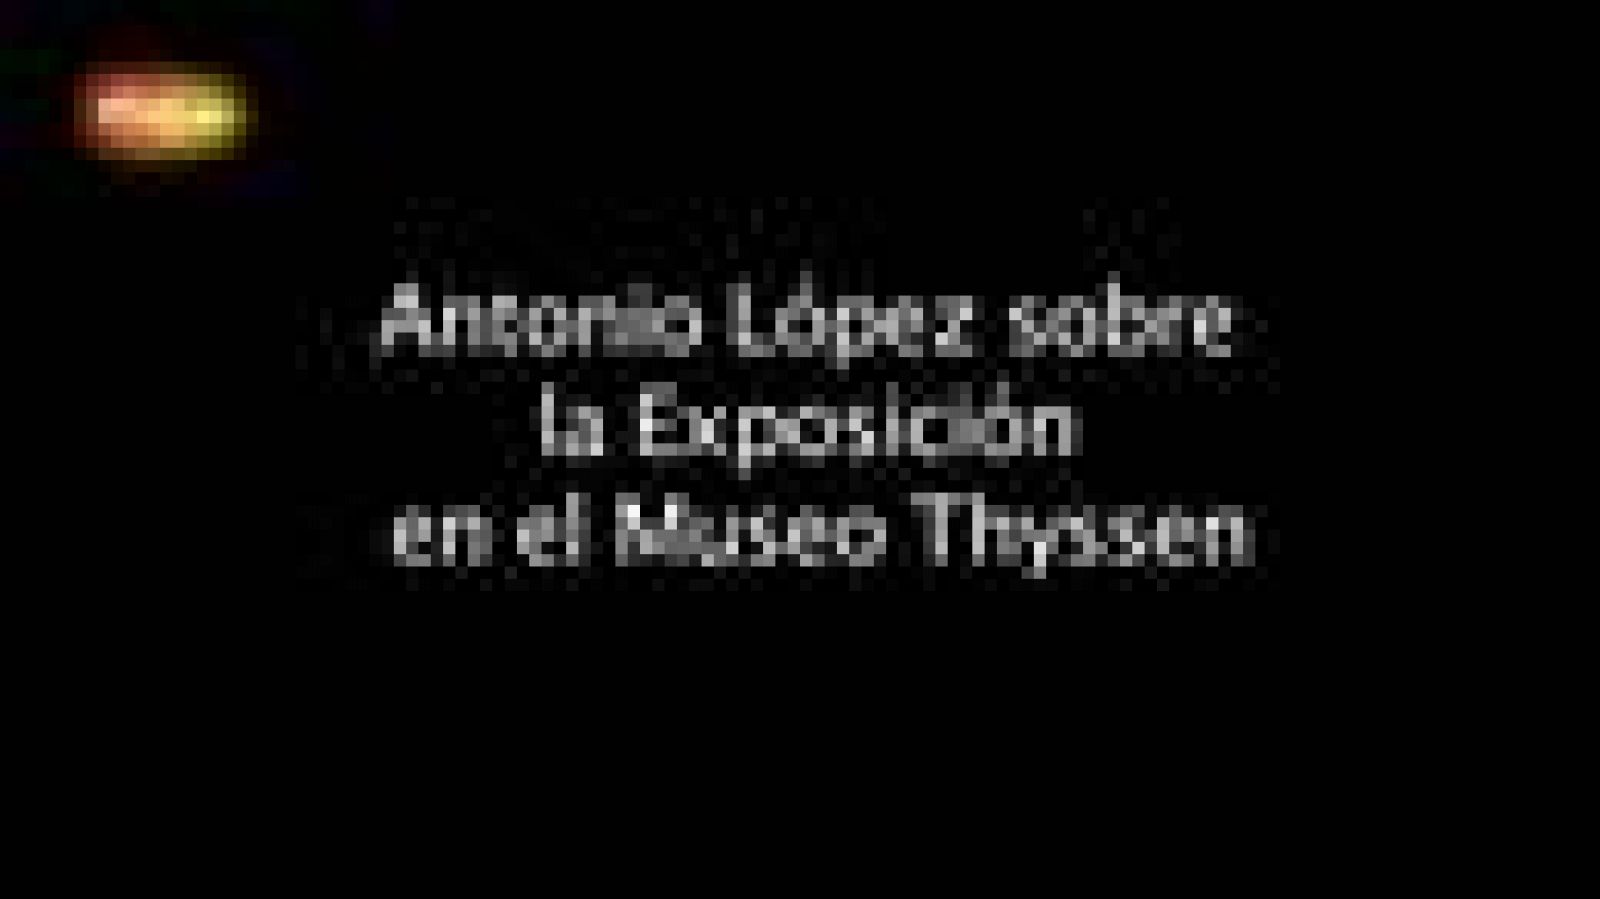 El Museo Thyssen de Madrid presenta la primera exposición antológica sobre Antonio López en España en casi 20 años, que prestará especial atención a su obra desde 1993.